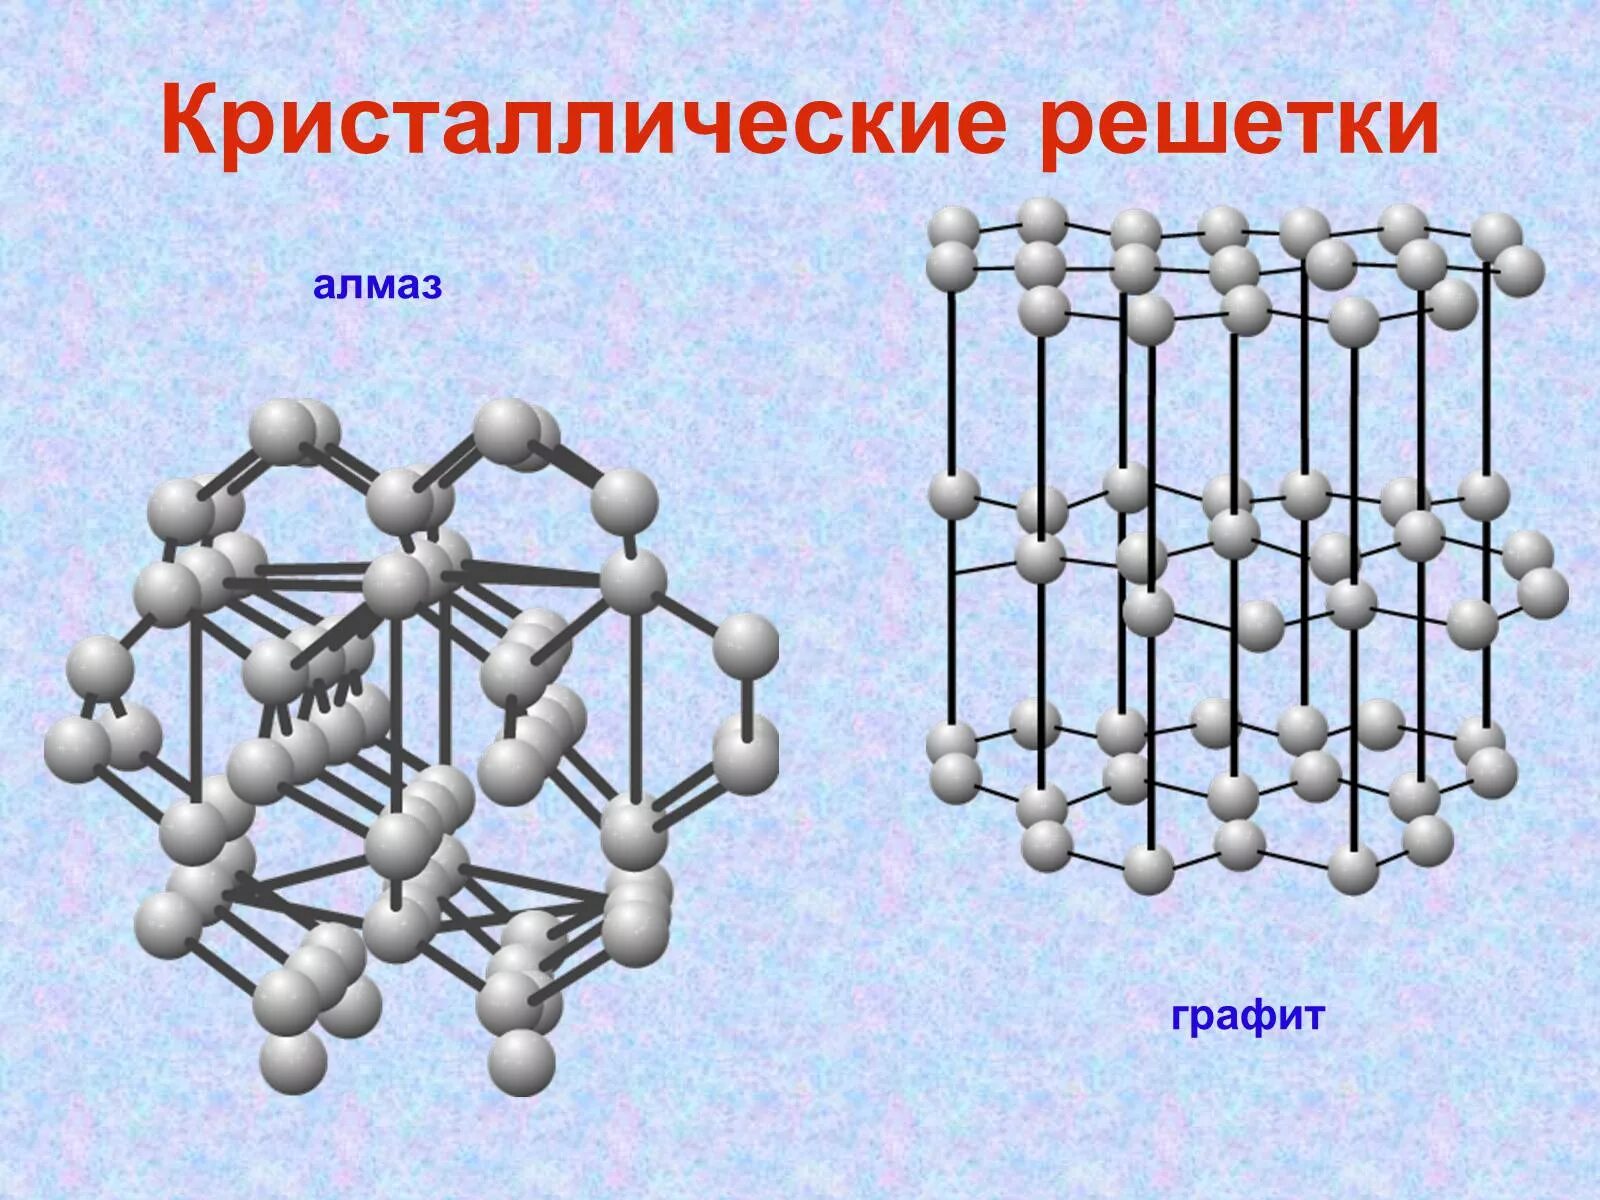 Алмаз и графит имеет кристаллическую решетку. Тип кристаллической решетки алмаза и графита. Строение решетки алмаза. Алмаз строение кристаллической решетки. Атомная кристаллическая решетка графита.